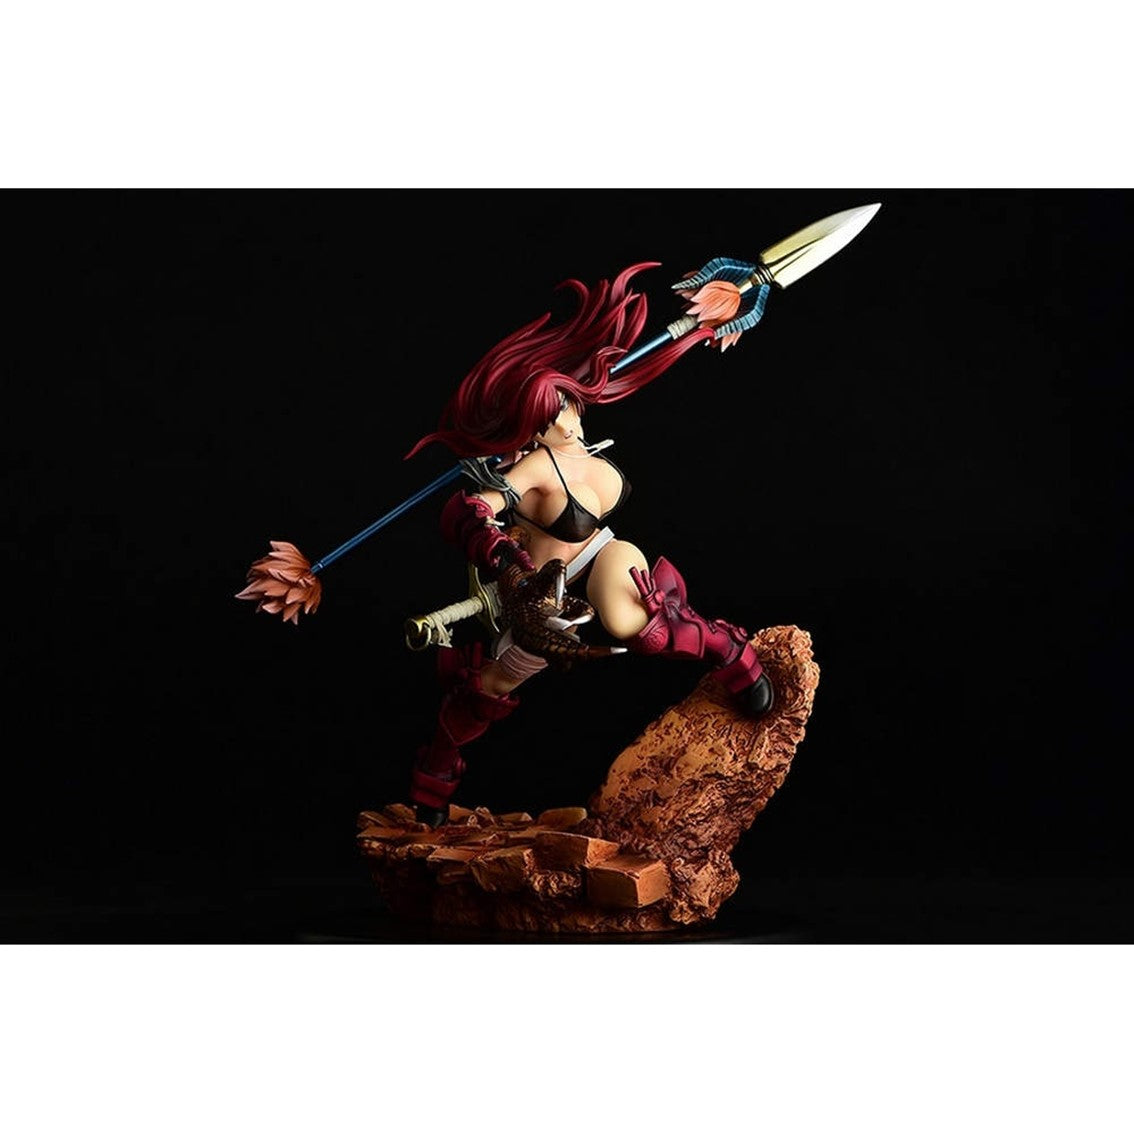 Fairy Tail Estatua Erza Scarlet The Knight Edición Limitada 31,5cm